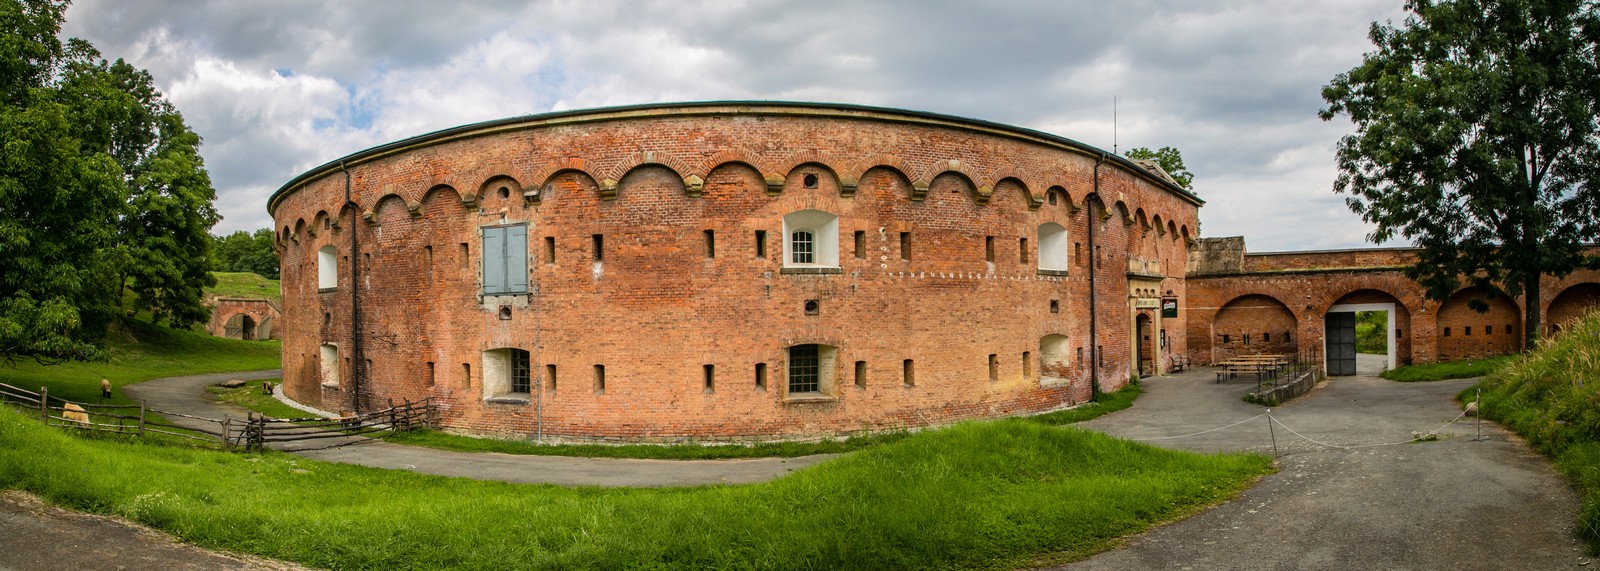 Fort XVII Krelov 5